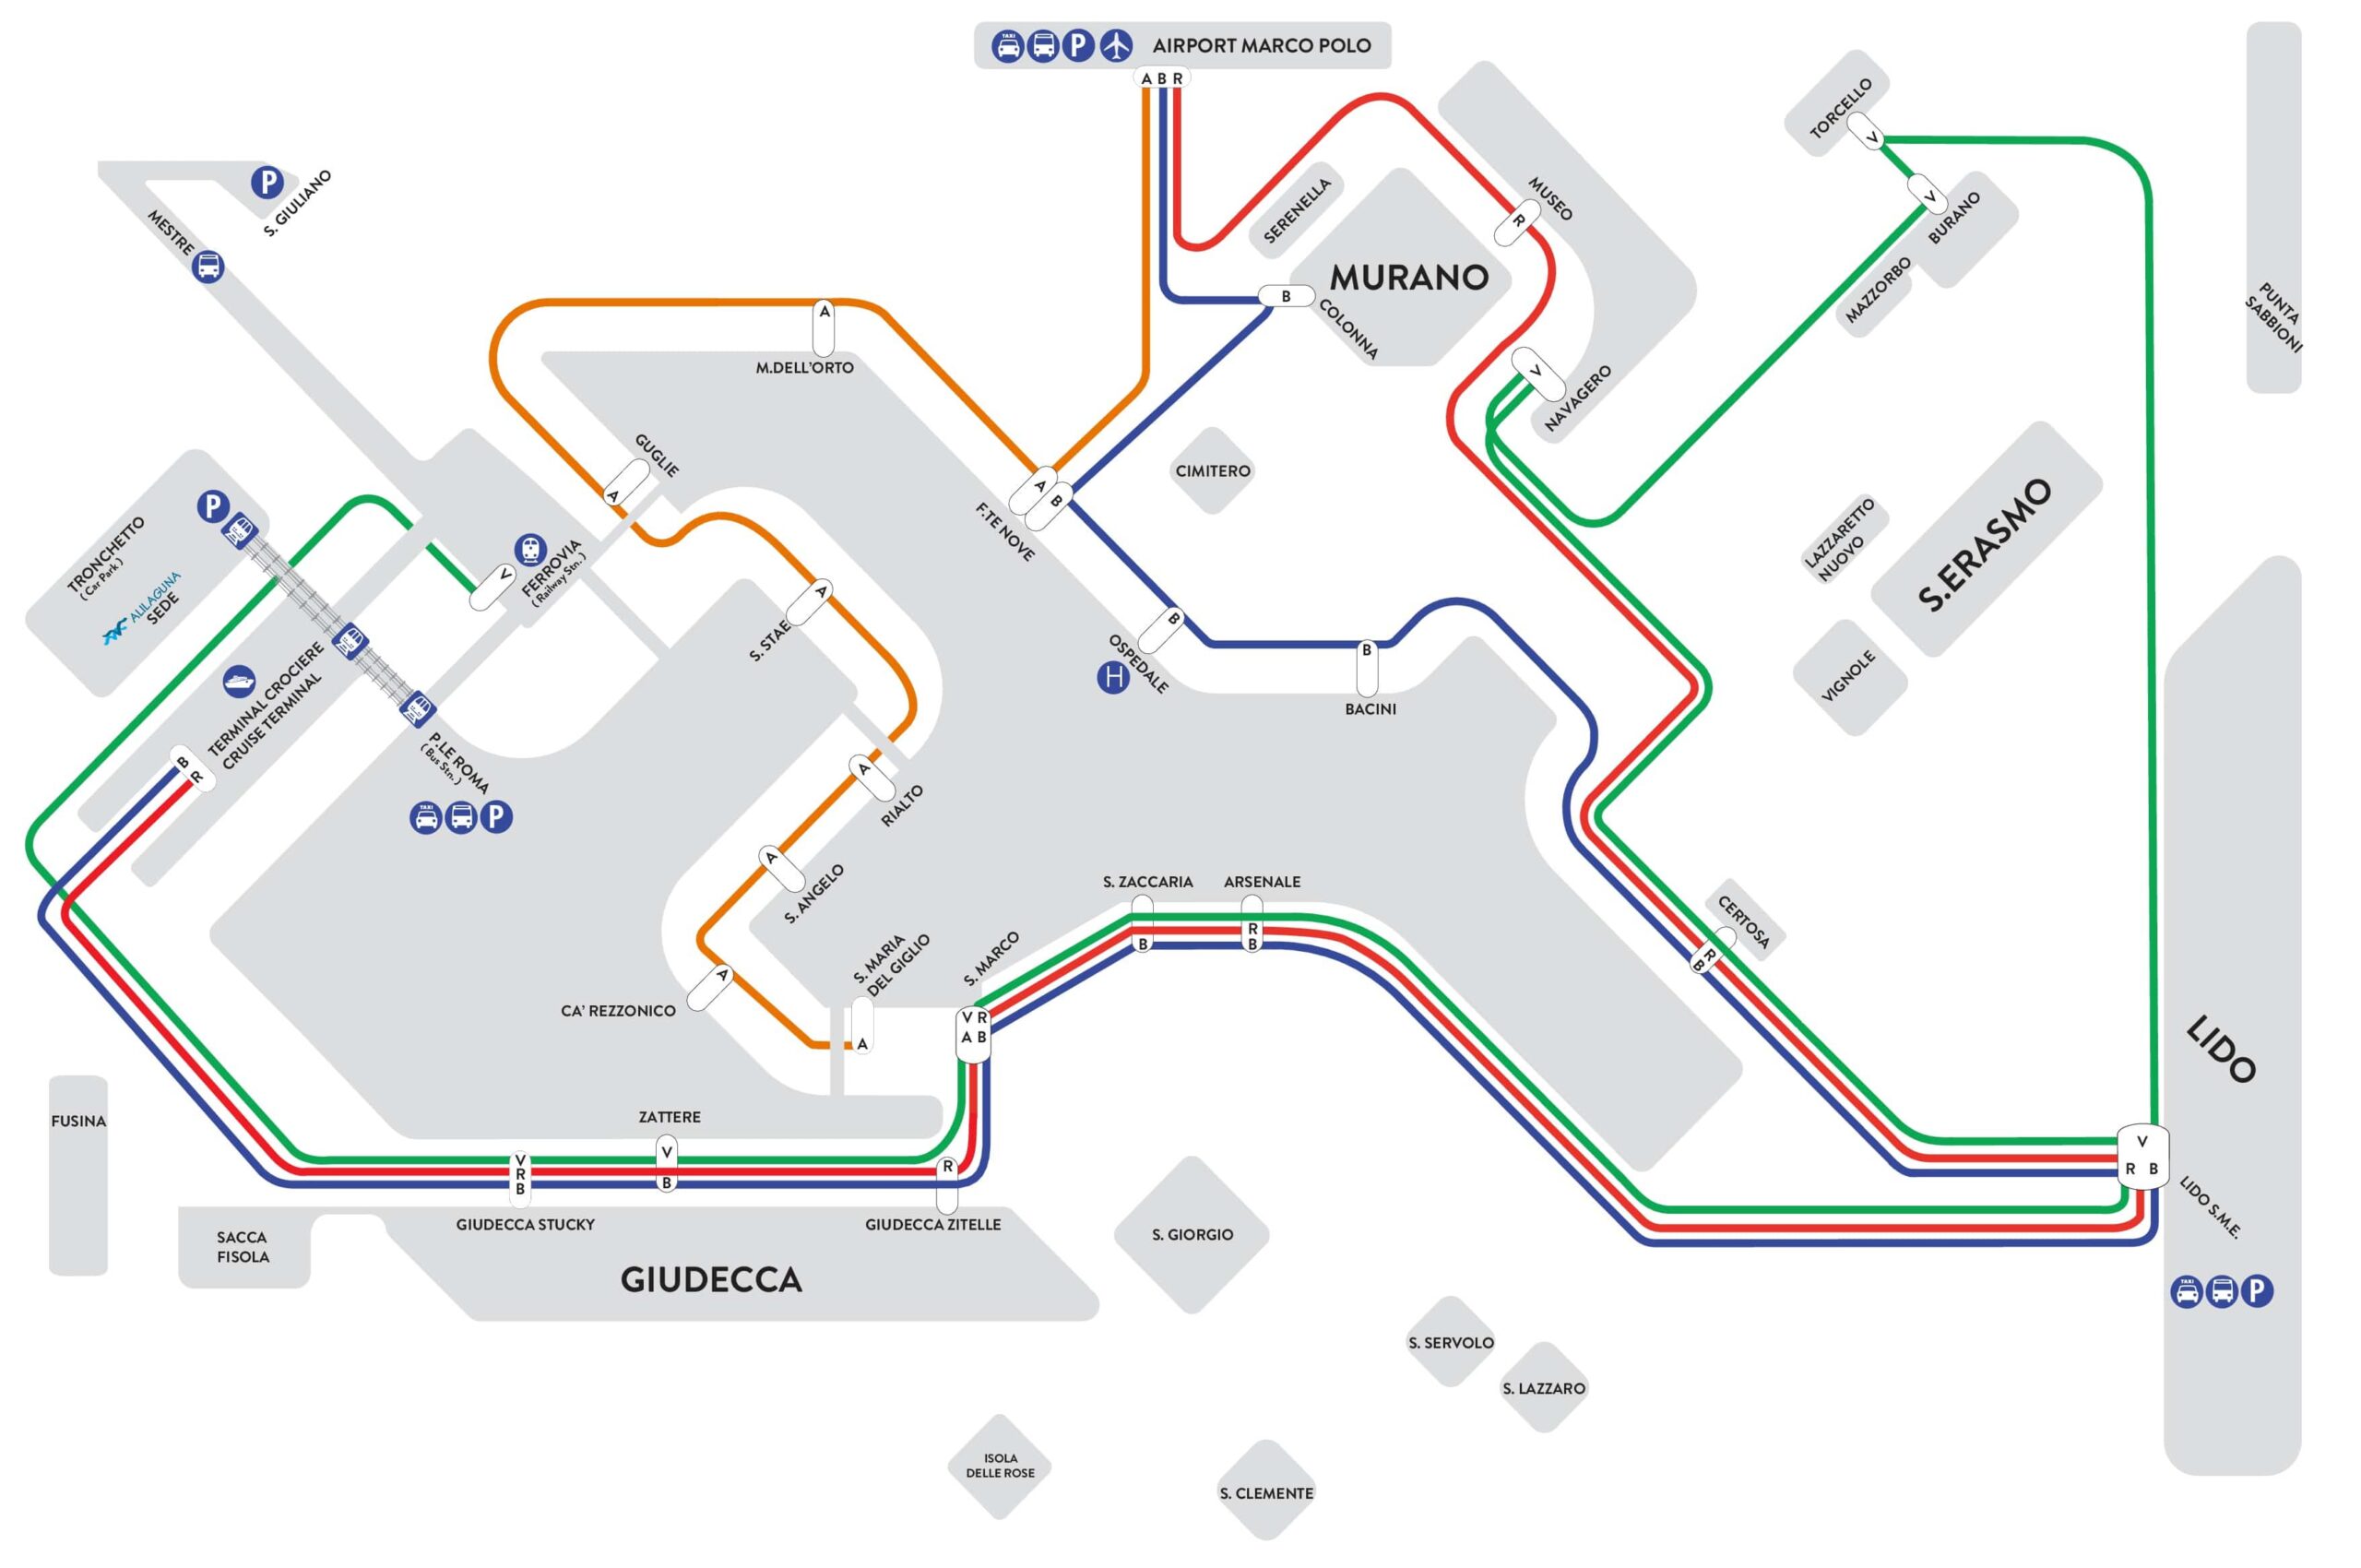 Mappa e piano dei trasporti Alilaguna di Venezia